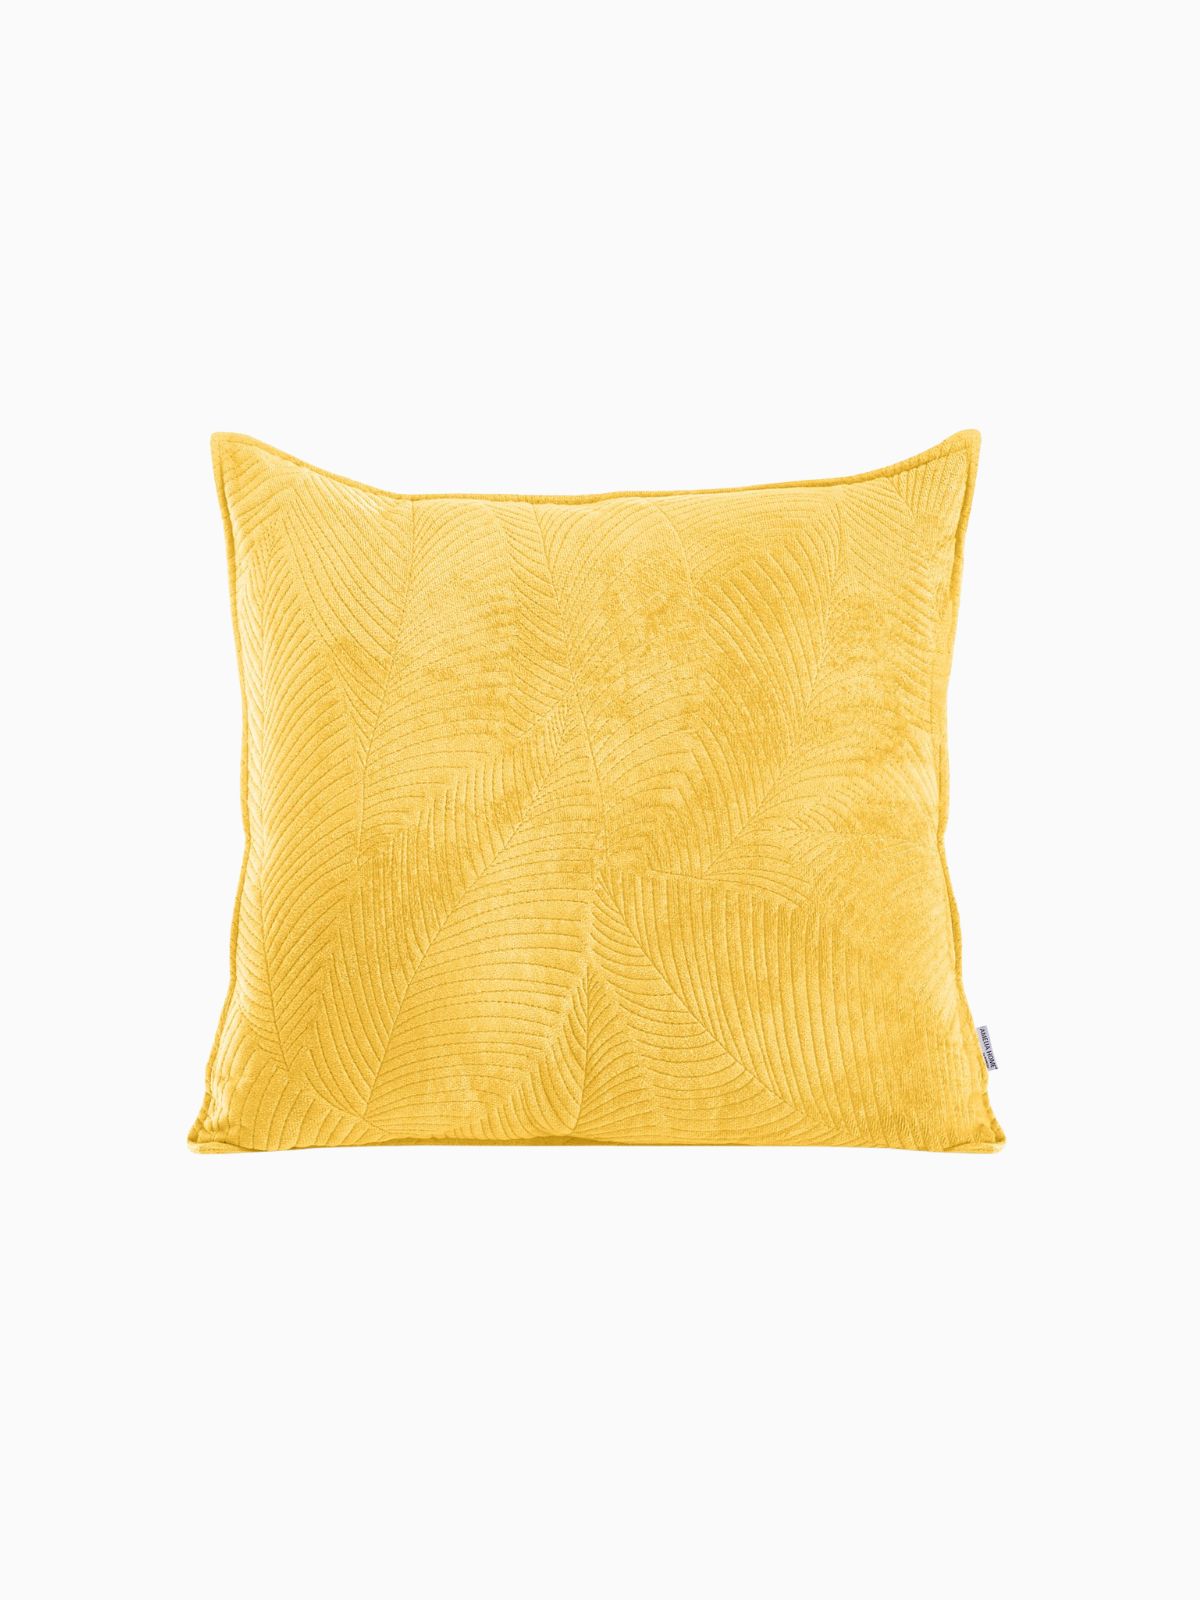 Cuscino decorativo in velluto Palsha, colore giallo 45x45 cm.-1